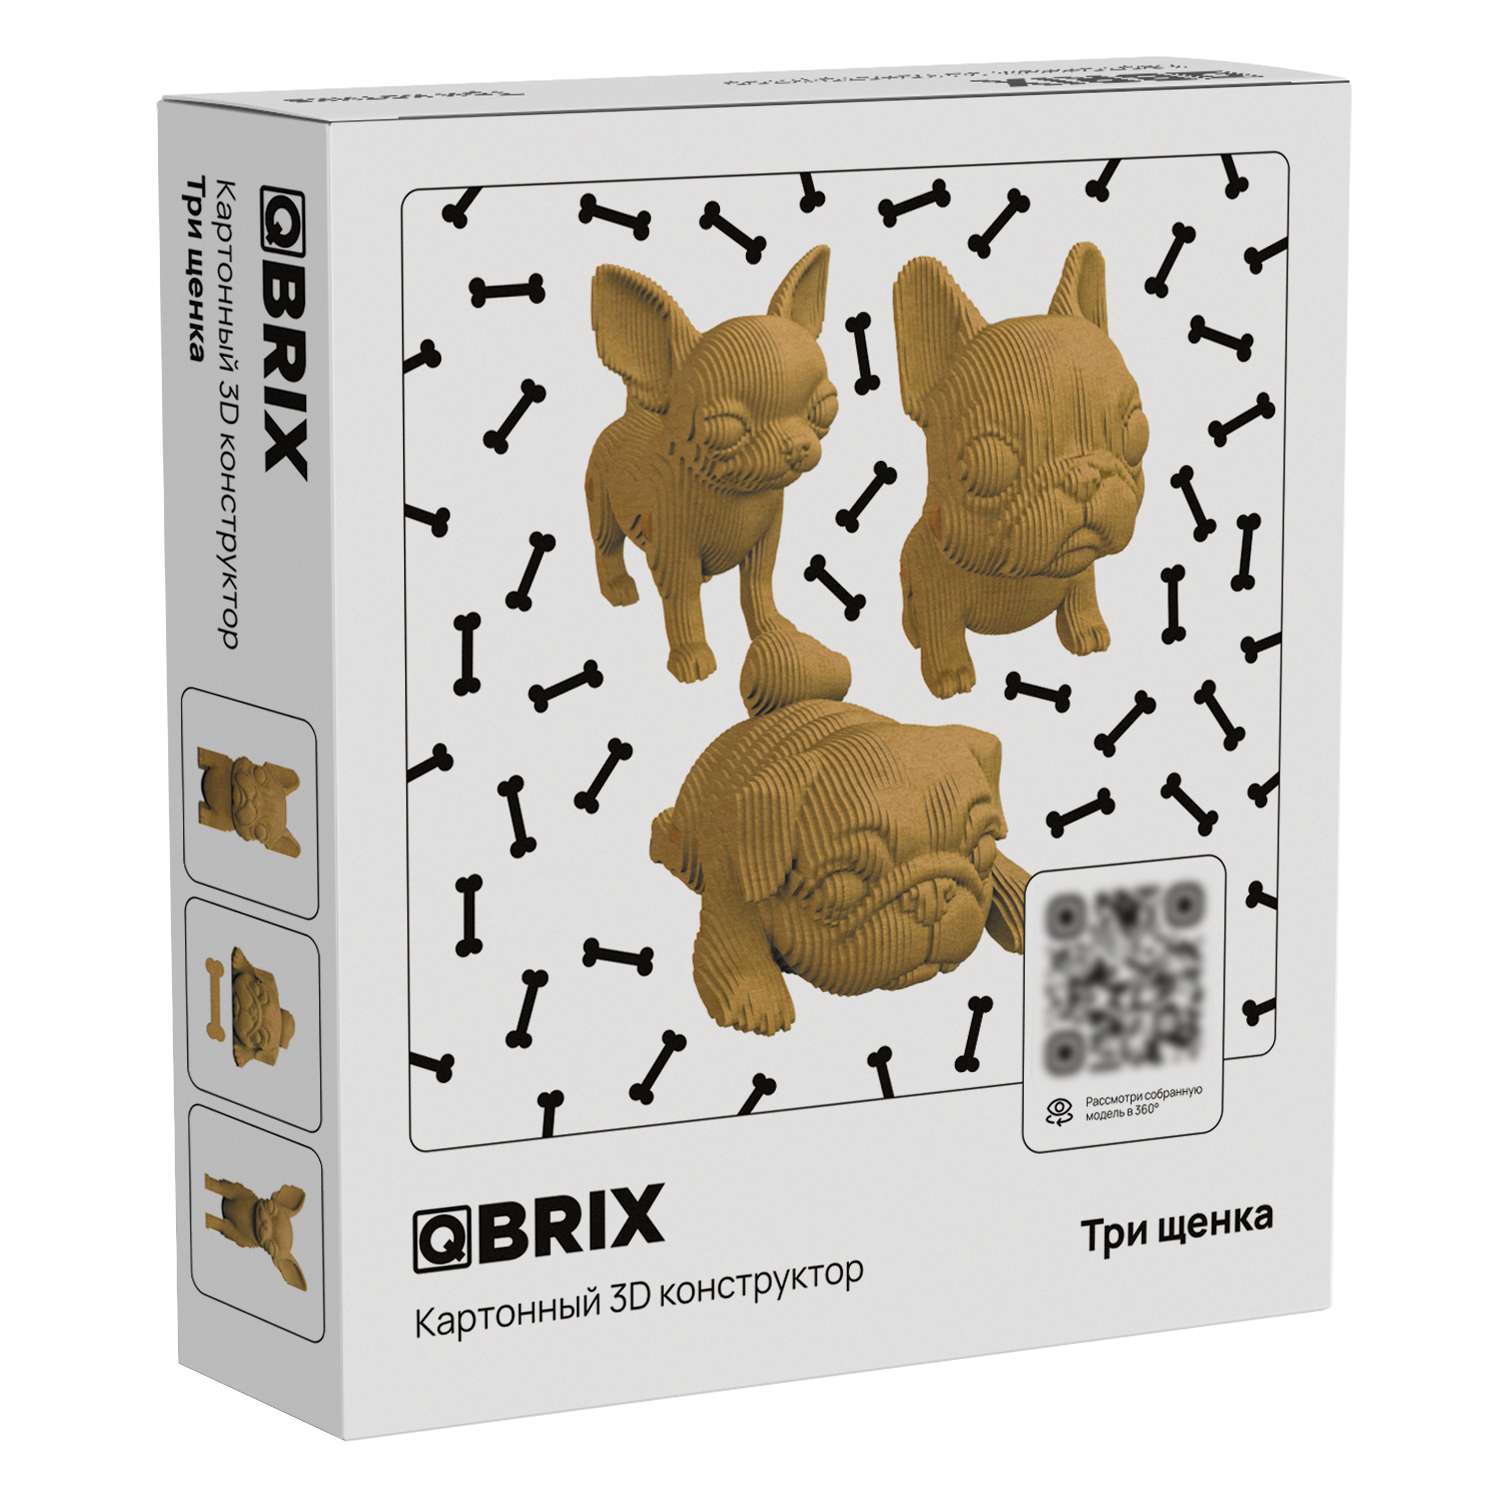 Конструктор QBRIX 3D картонный Три щенка 20042 20042 - фото 1